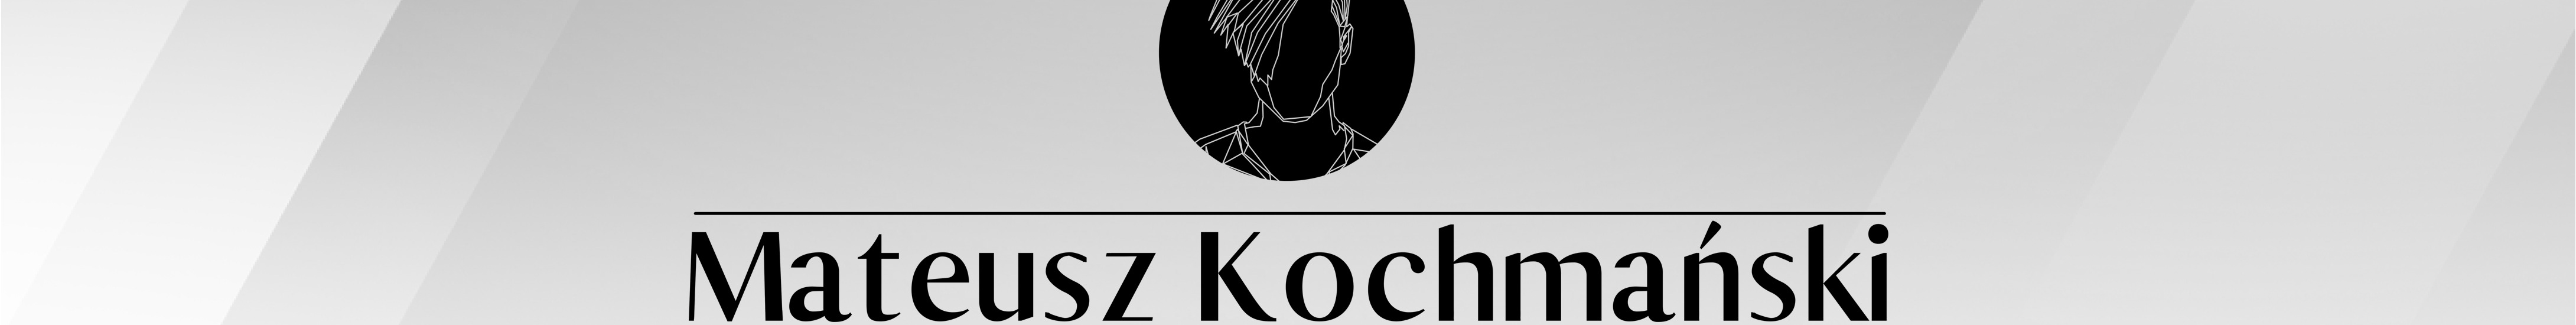 Mateusz Kochmański's profile banner